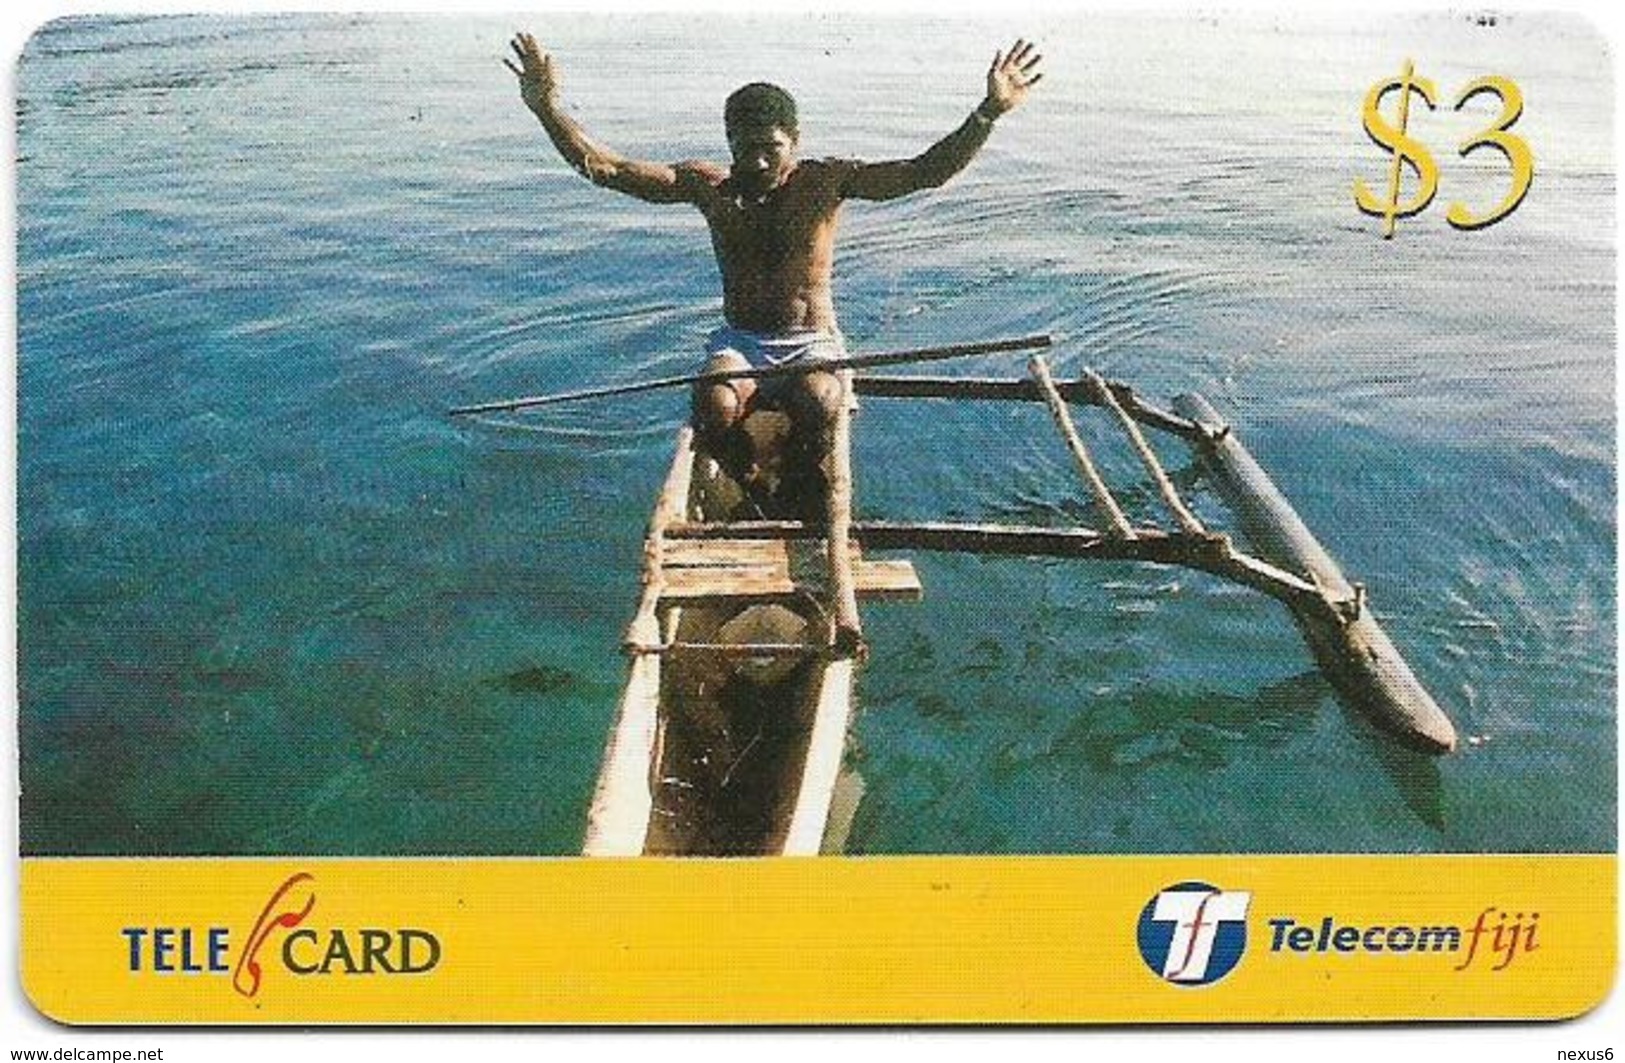 Fiji - Telecom Fiji - Bula Fiji Tourism, Canoeing, Cn.99094, Remote Mem. 3$, Used - Figi